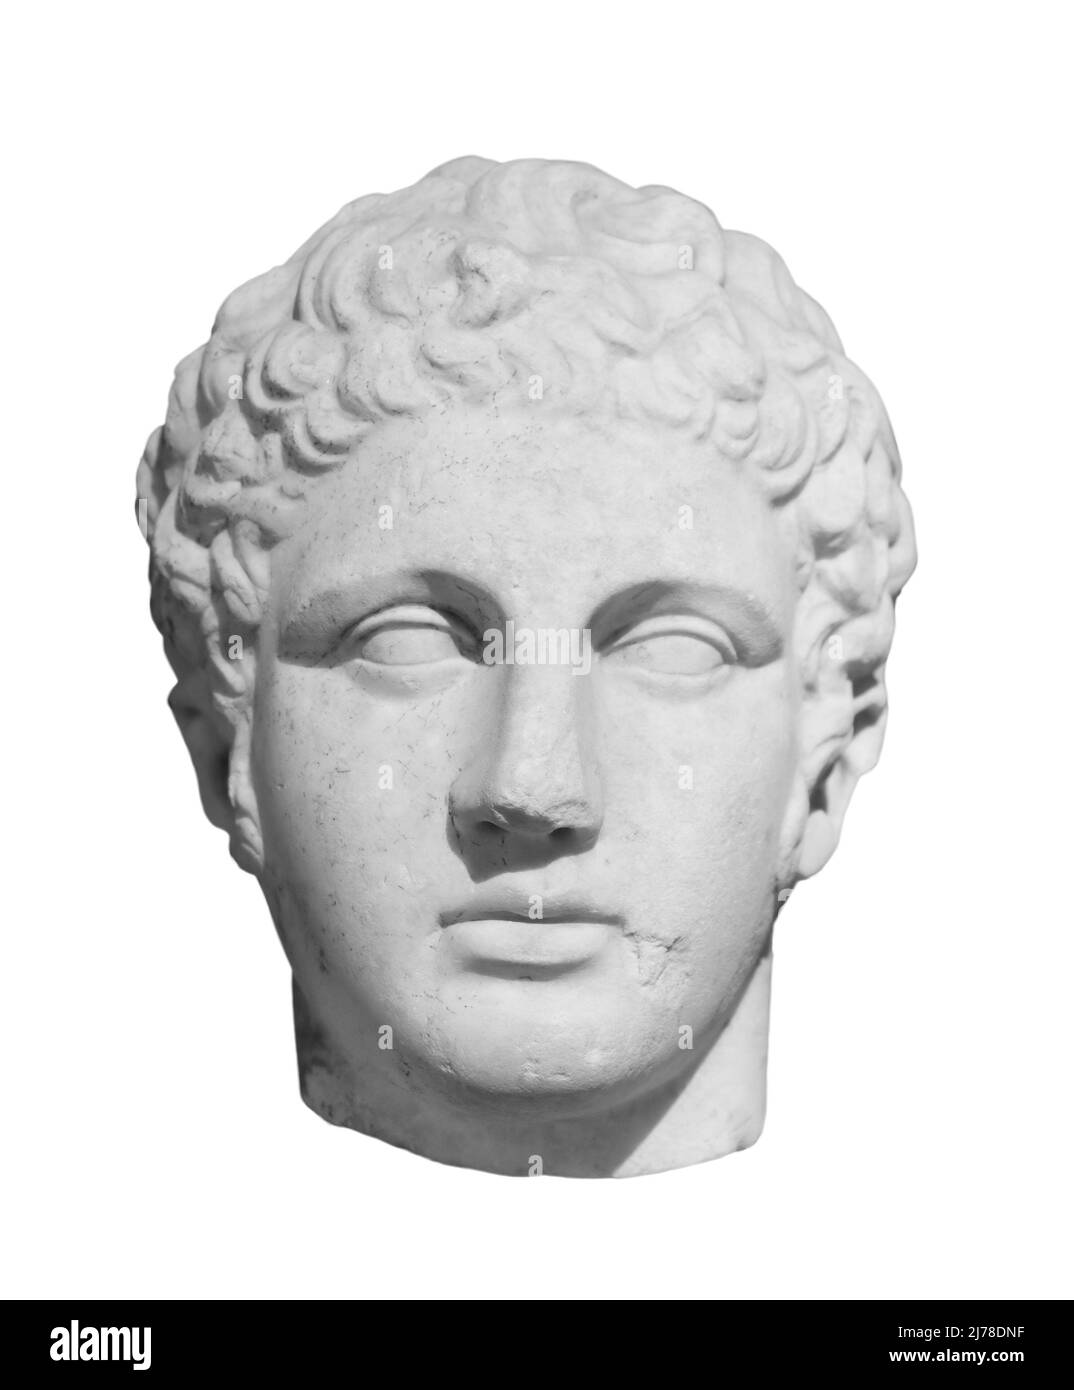 Ancienne statue du dieu antique du commerce, marchands et voyageurs Hermes - Mercure. Sculpture de la tête isolée sur fond blanc avec écrêtage Banque D'Images